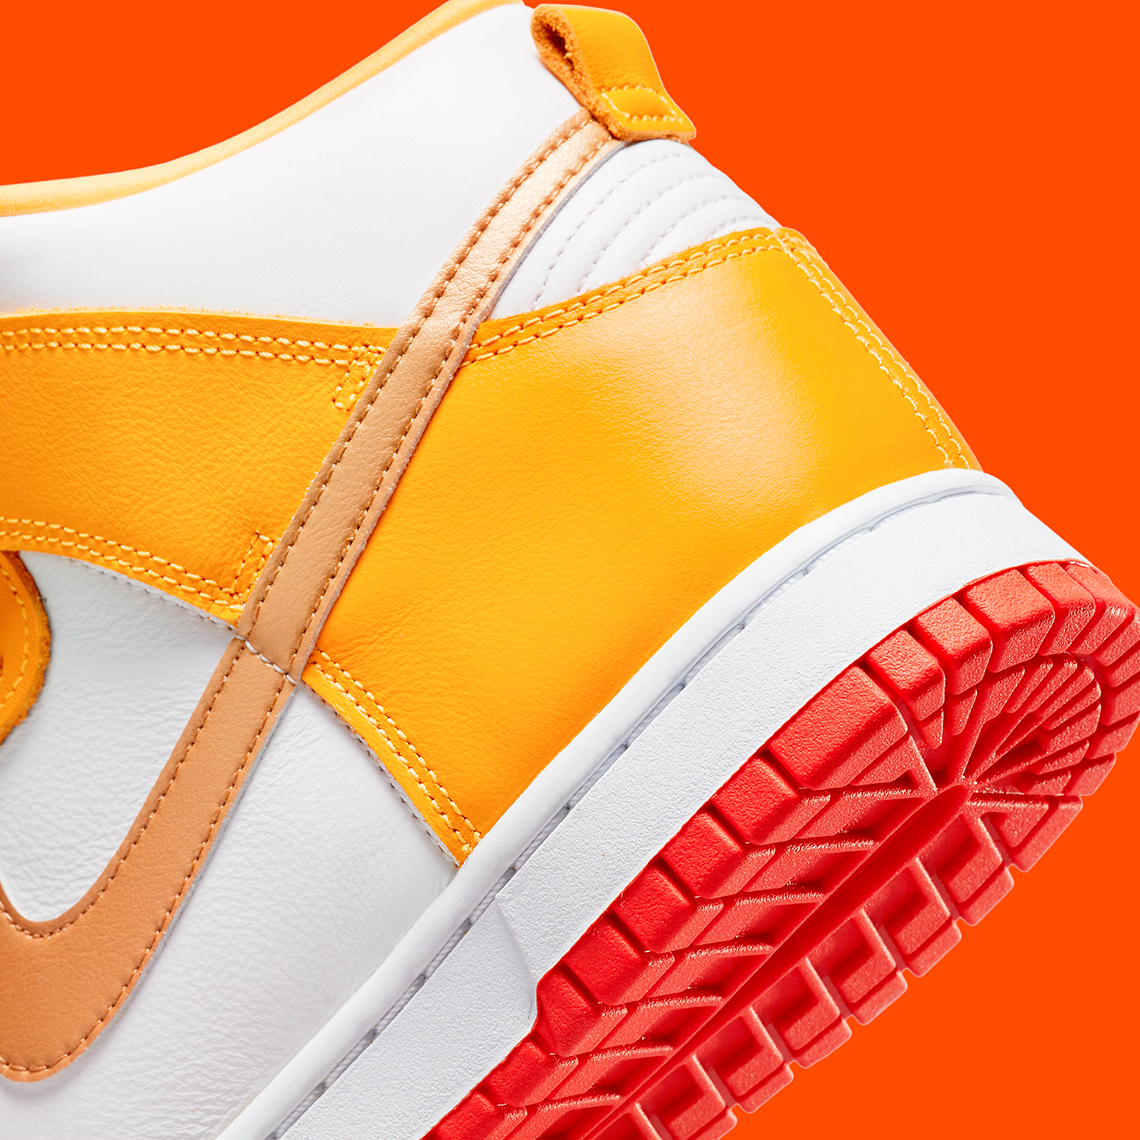 Nike Dunk High Laser Orange